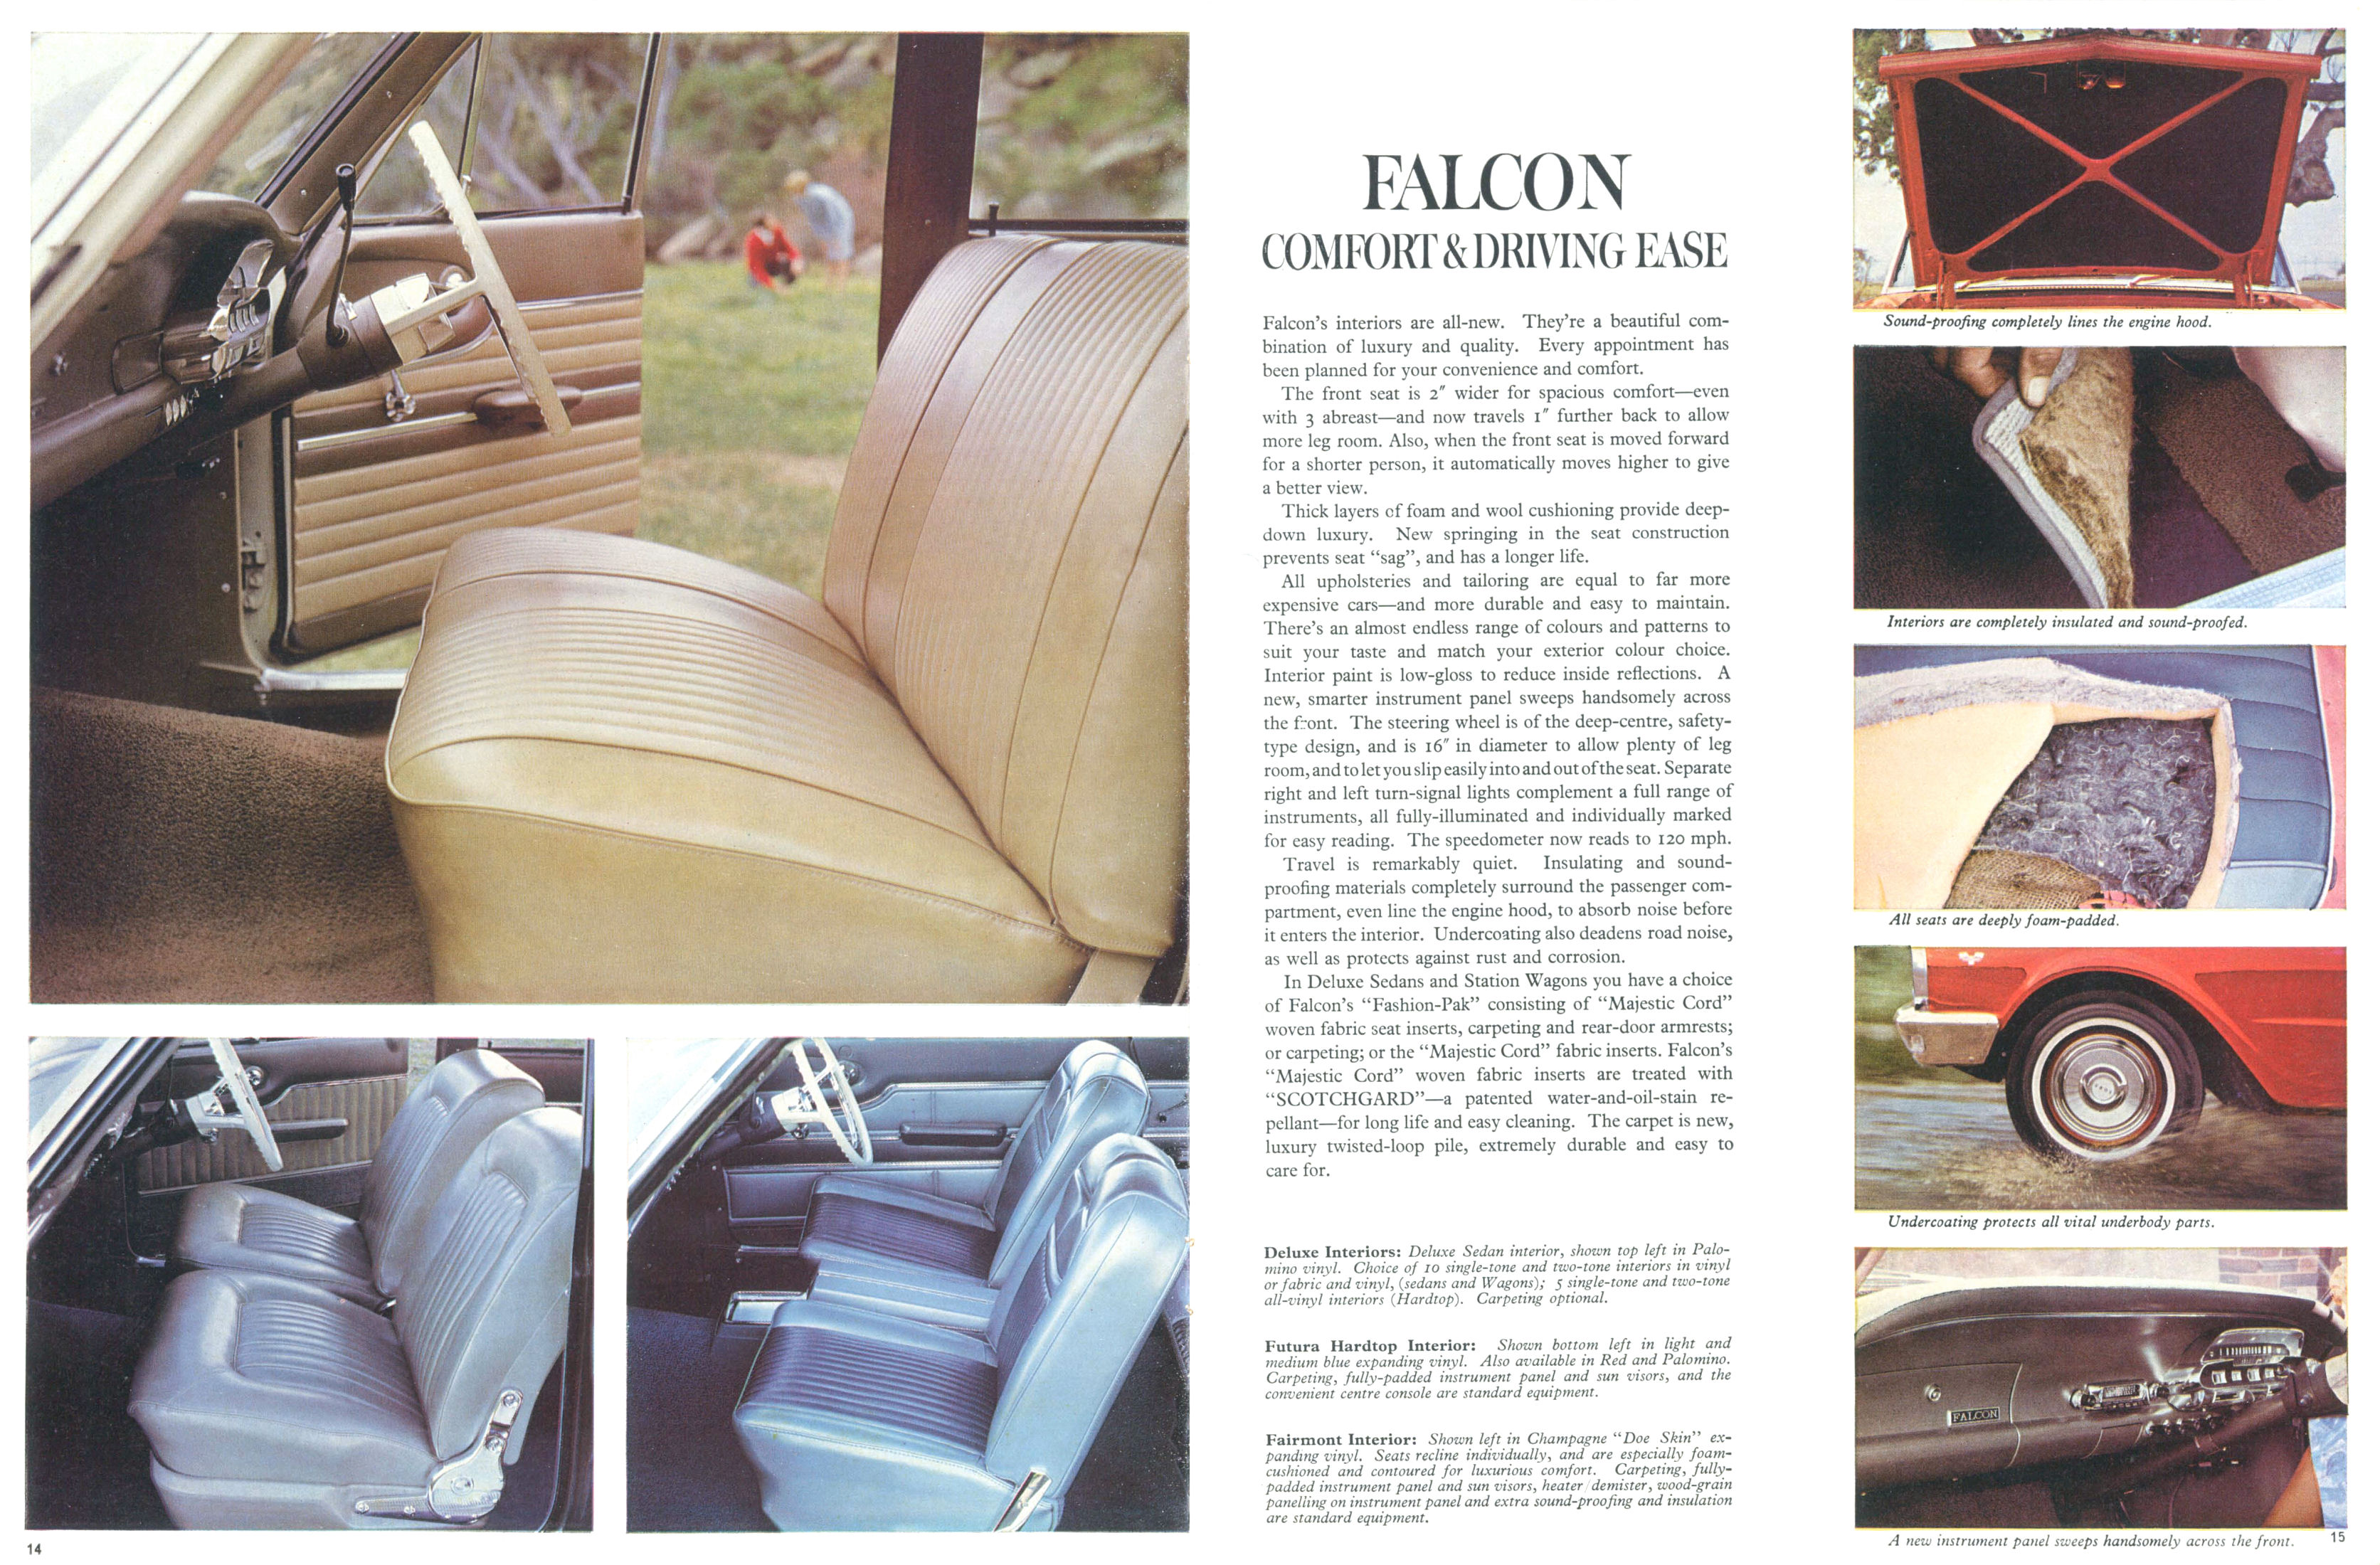 1965_Ford_Falcon_XP_Prestige_Rev-14-15